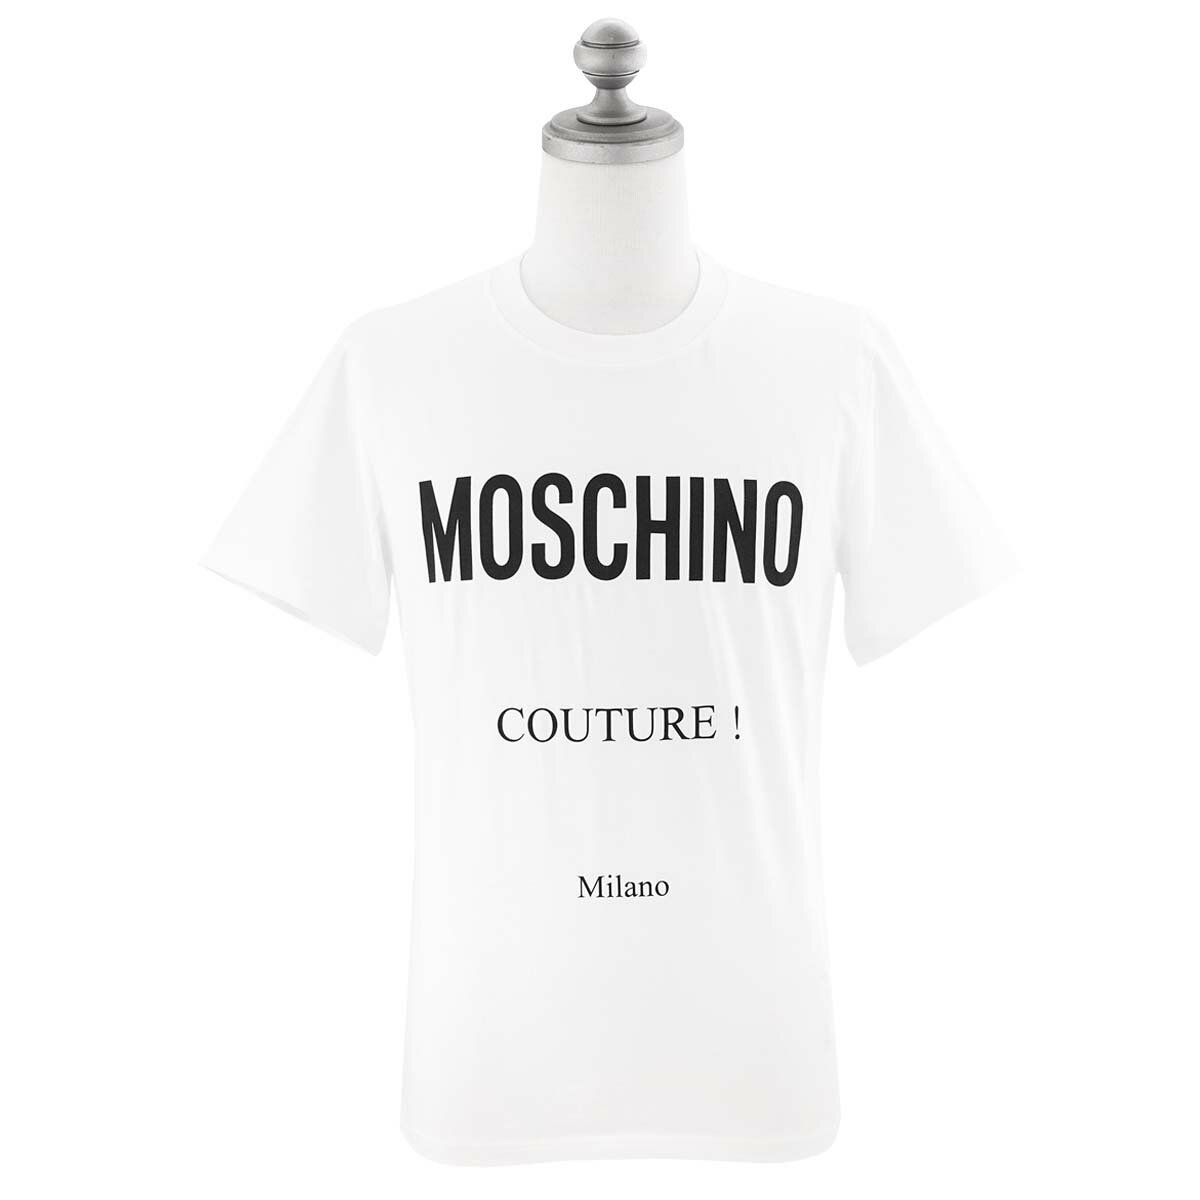 モスキーノ Tシャツ メンズ MOSCHINO モスキーノ 半袖Tシャツ 07302039A1 001 メンズ 男性 半袖クルーネック レギュラーフィット WHITE ホワイト